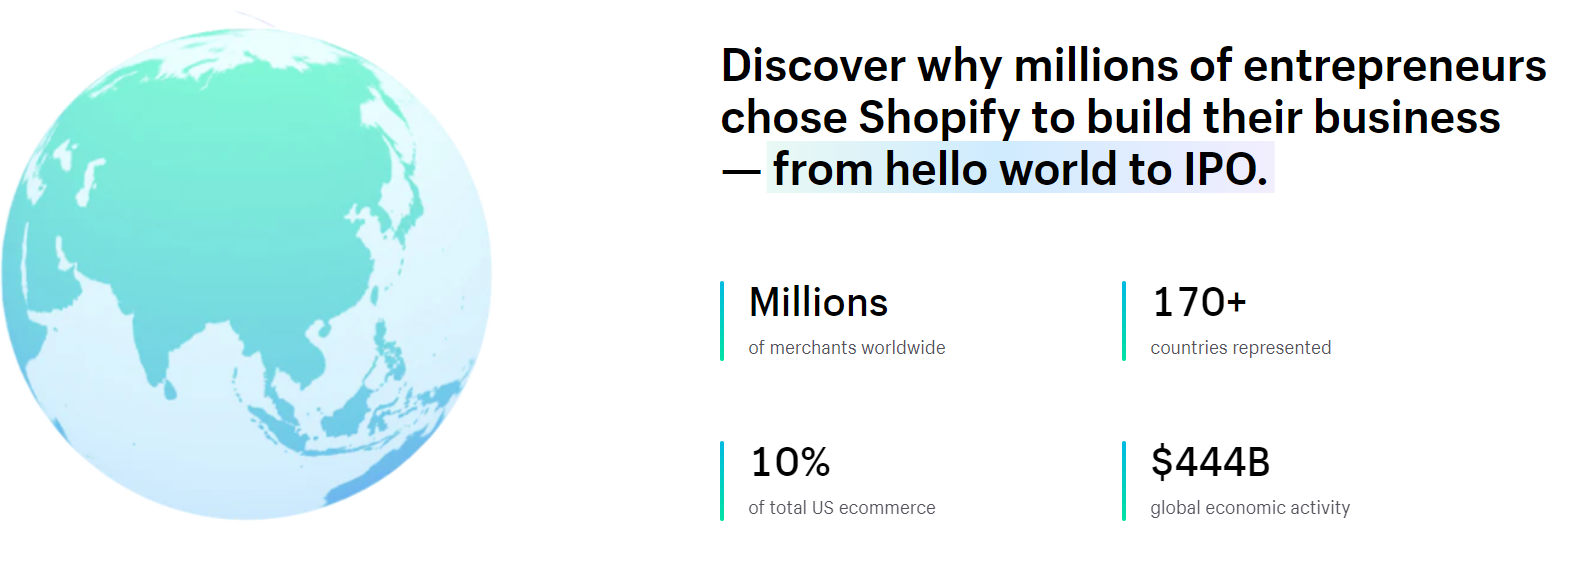 Fakta om Shopify og nettbtuikk uten lager